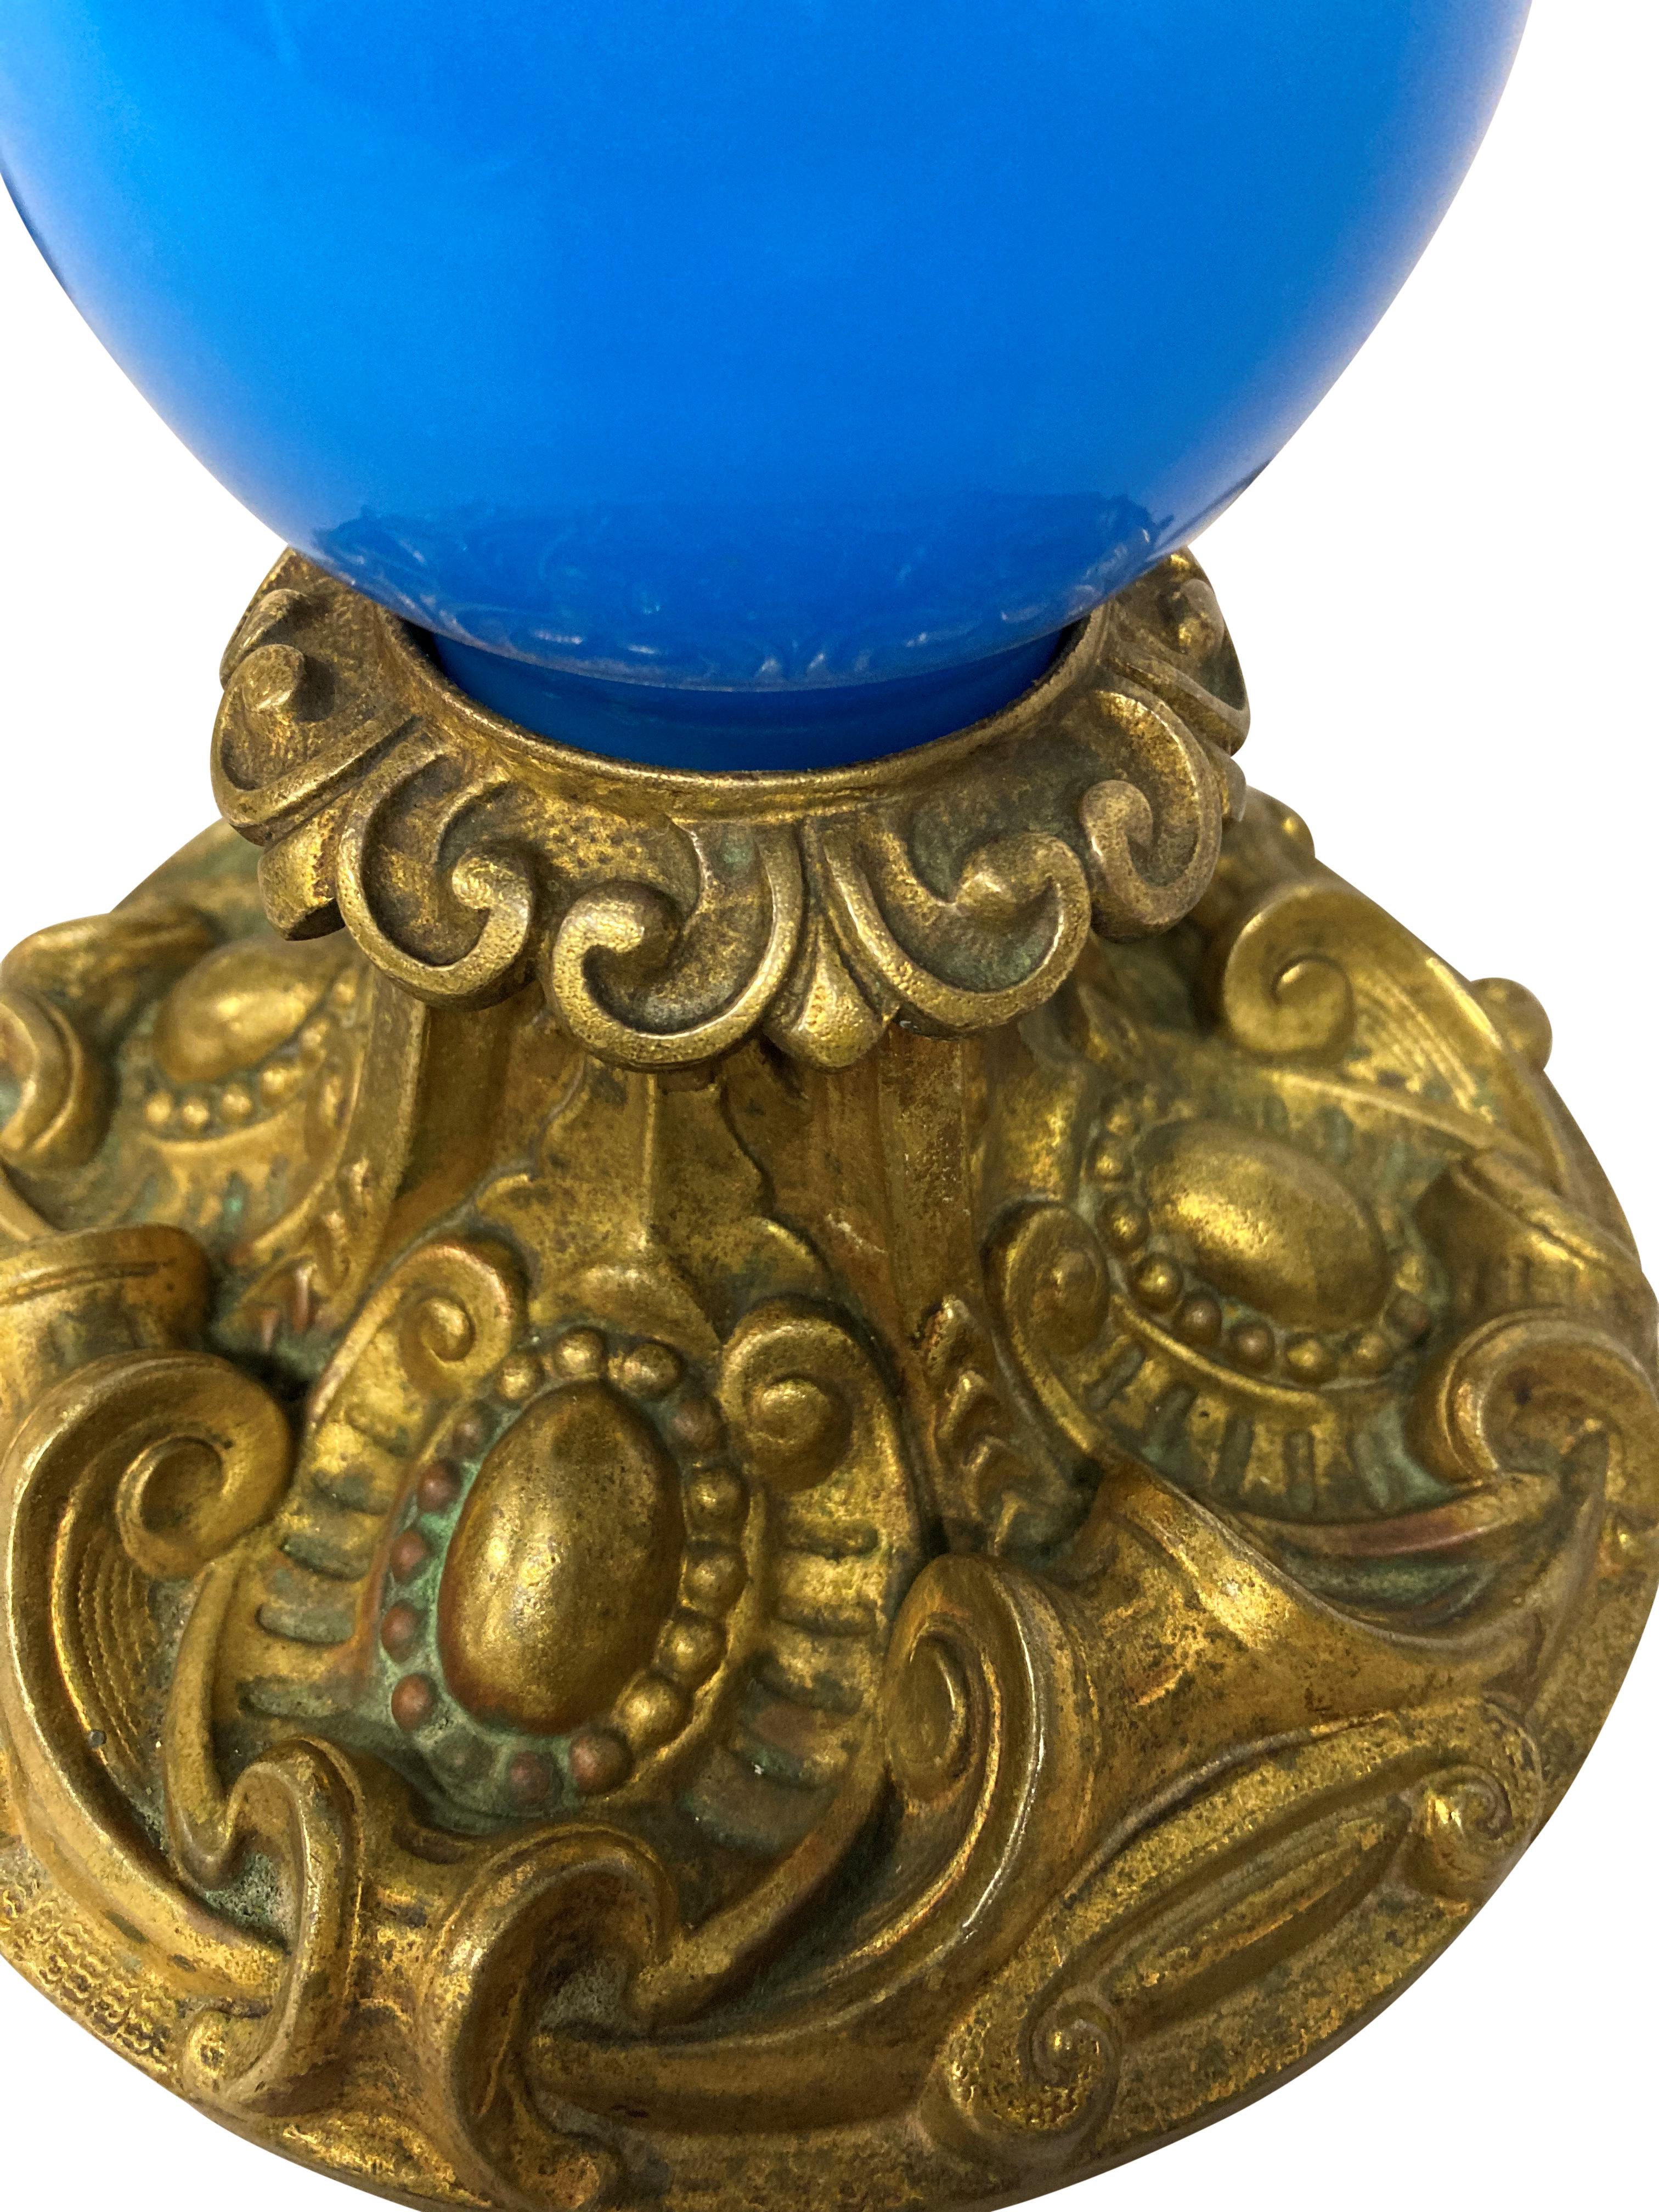 Une lampe de table française de la fin du XIXe siècle en verre bleu, avec des montures décoratives en métal doré. Anciennement pour le pétrole.